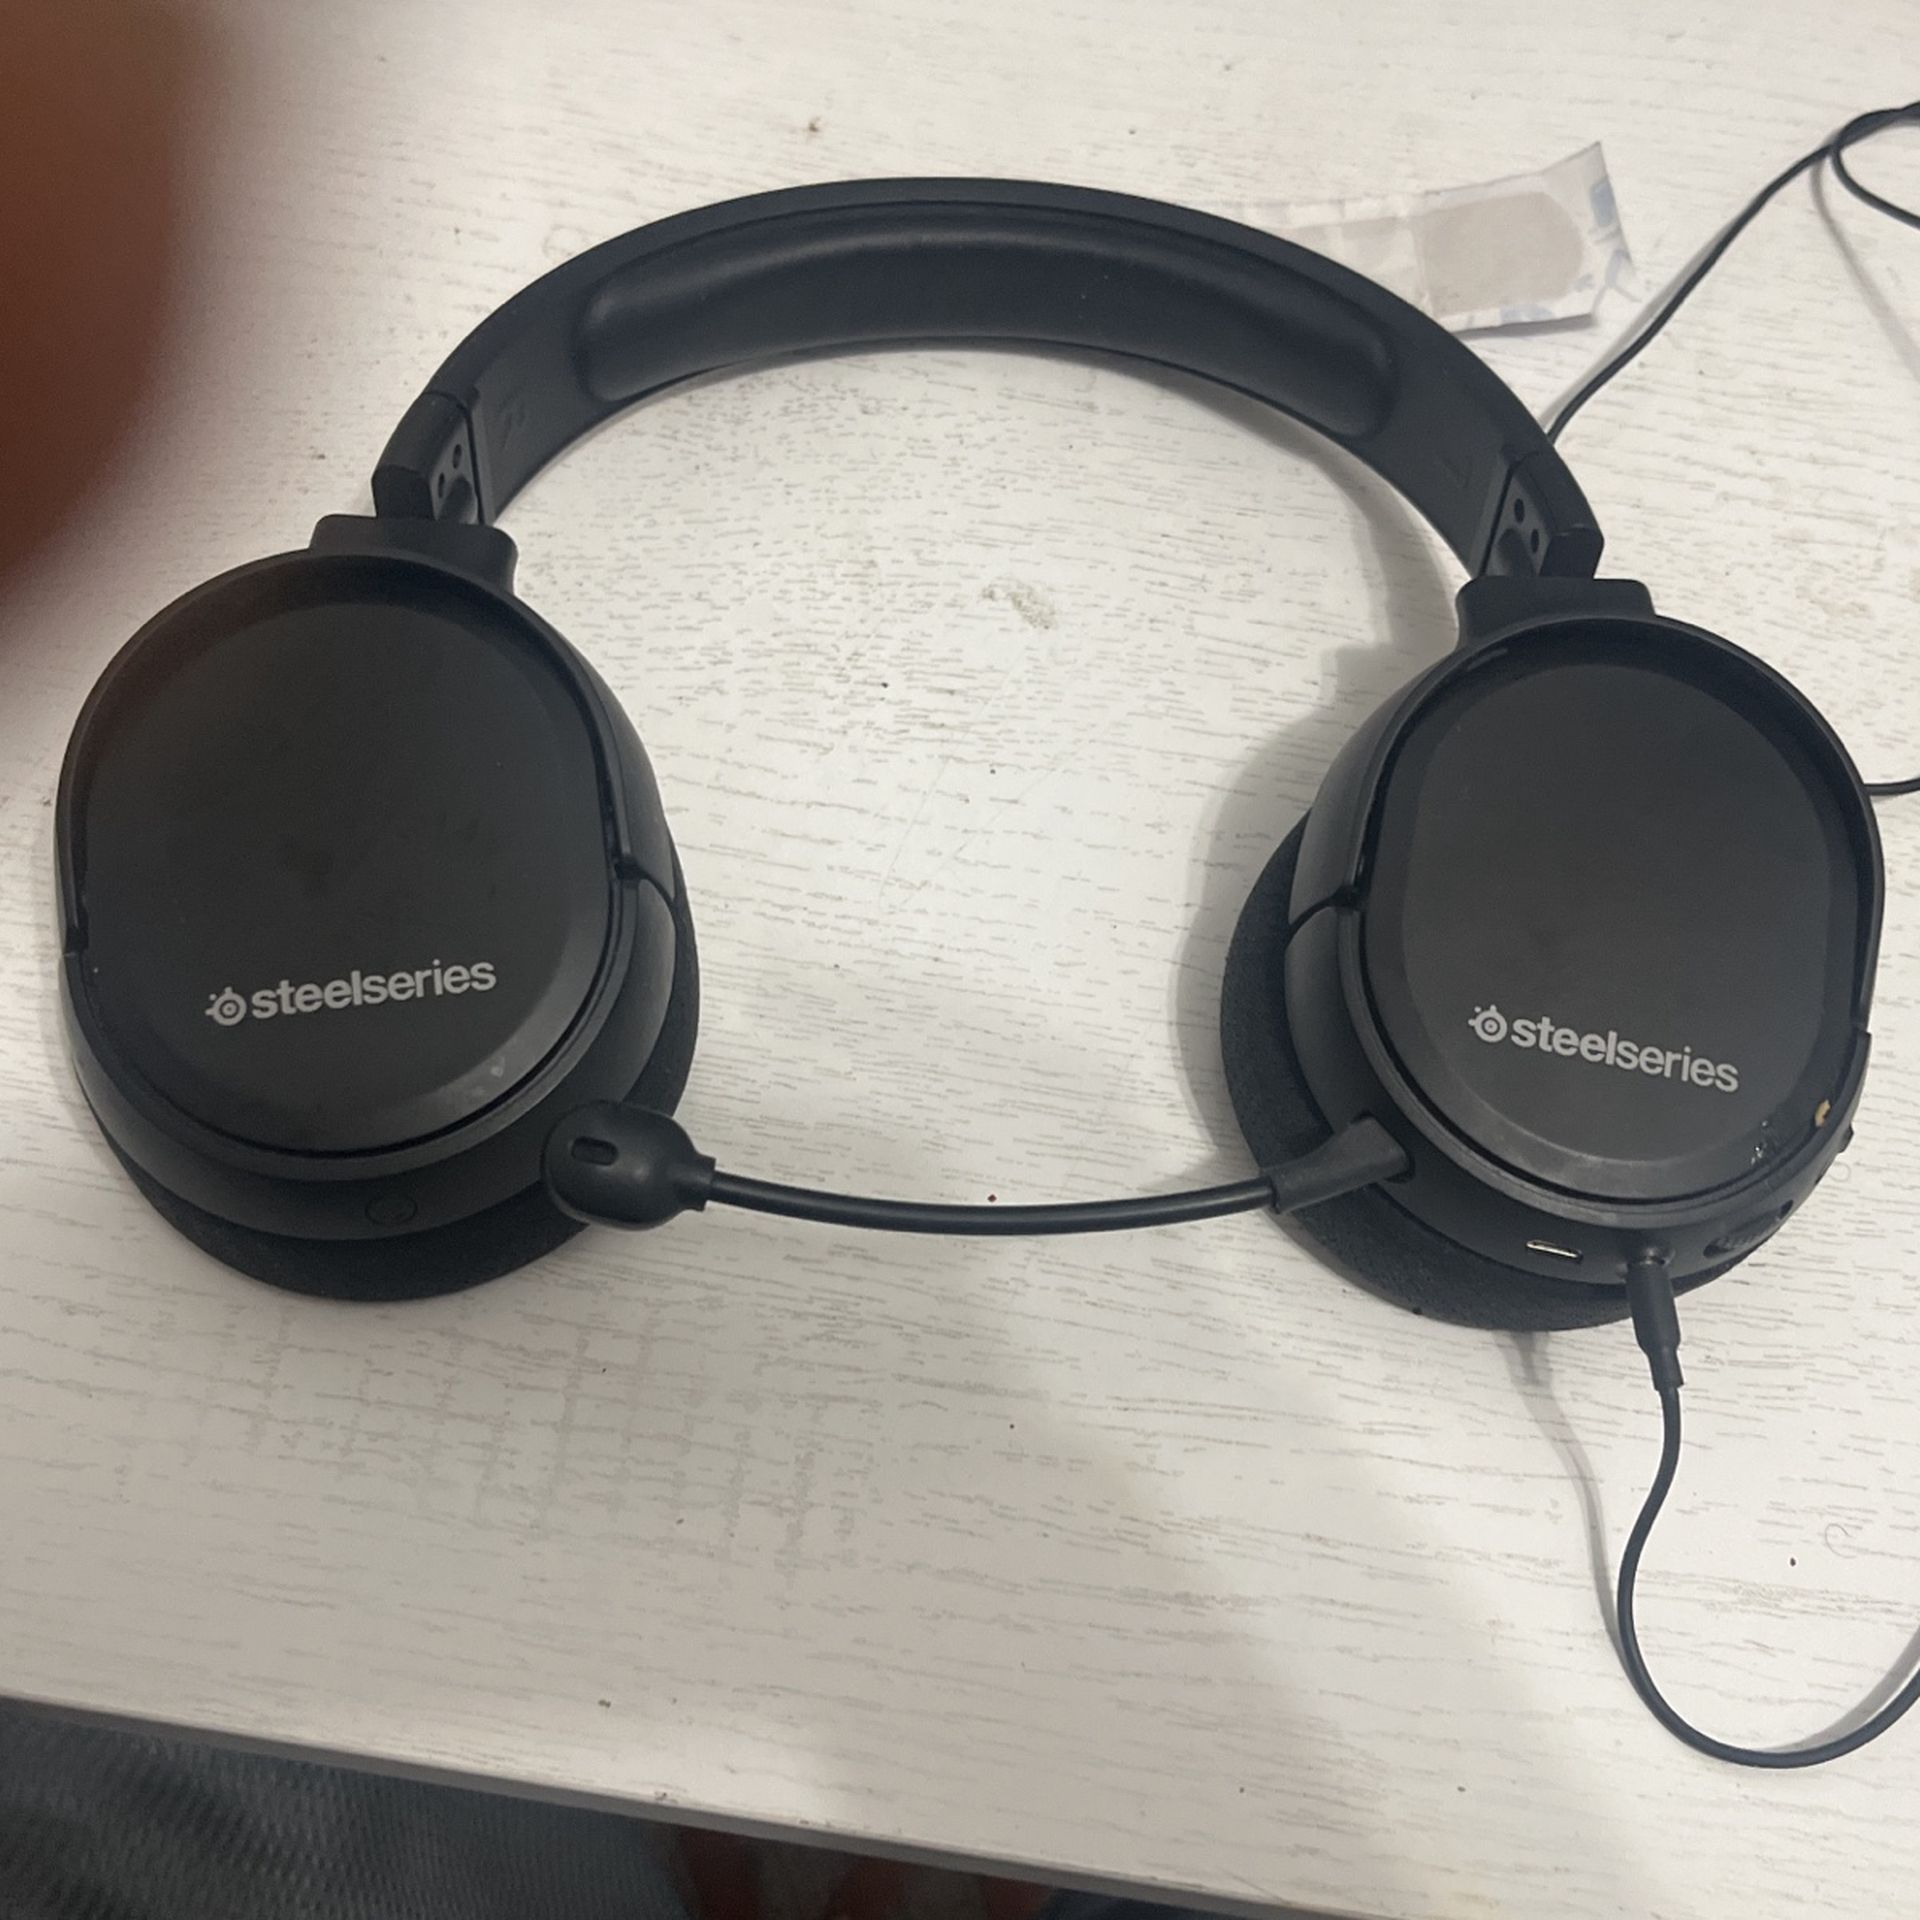 Steelseries Headphones 